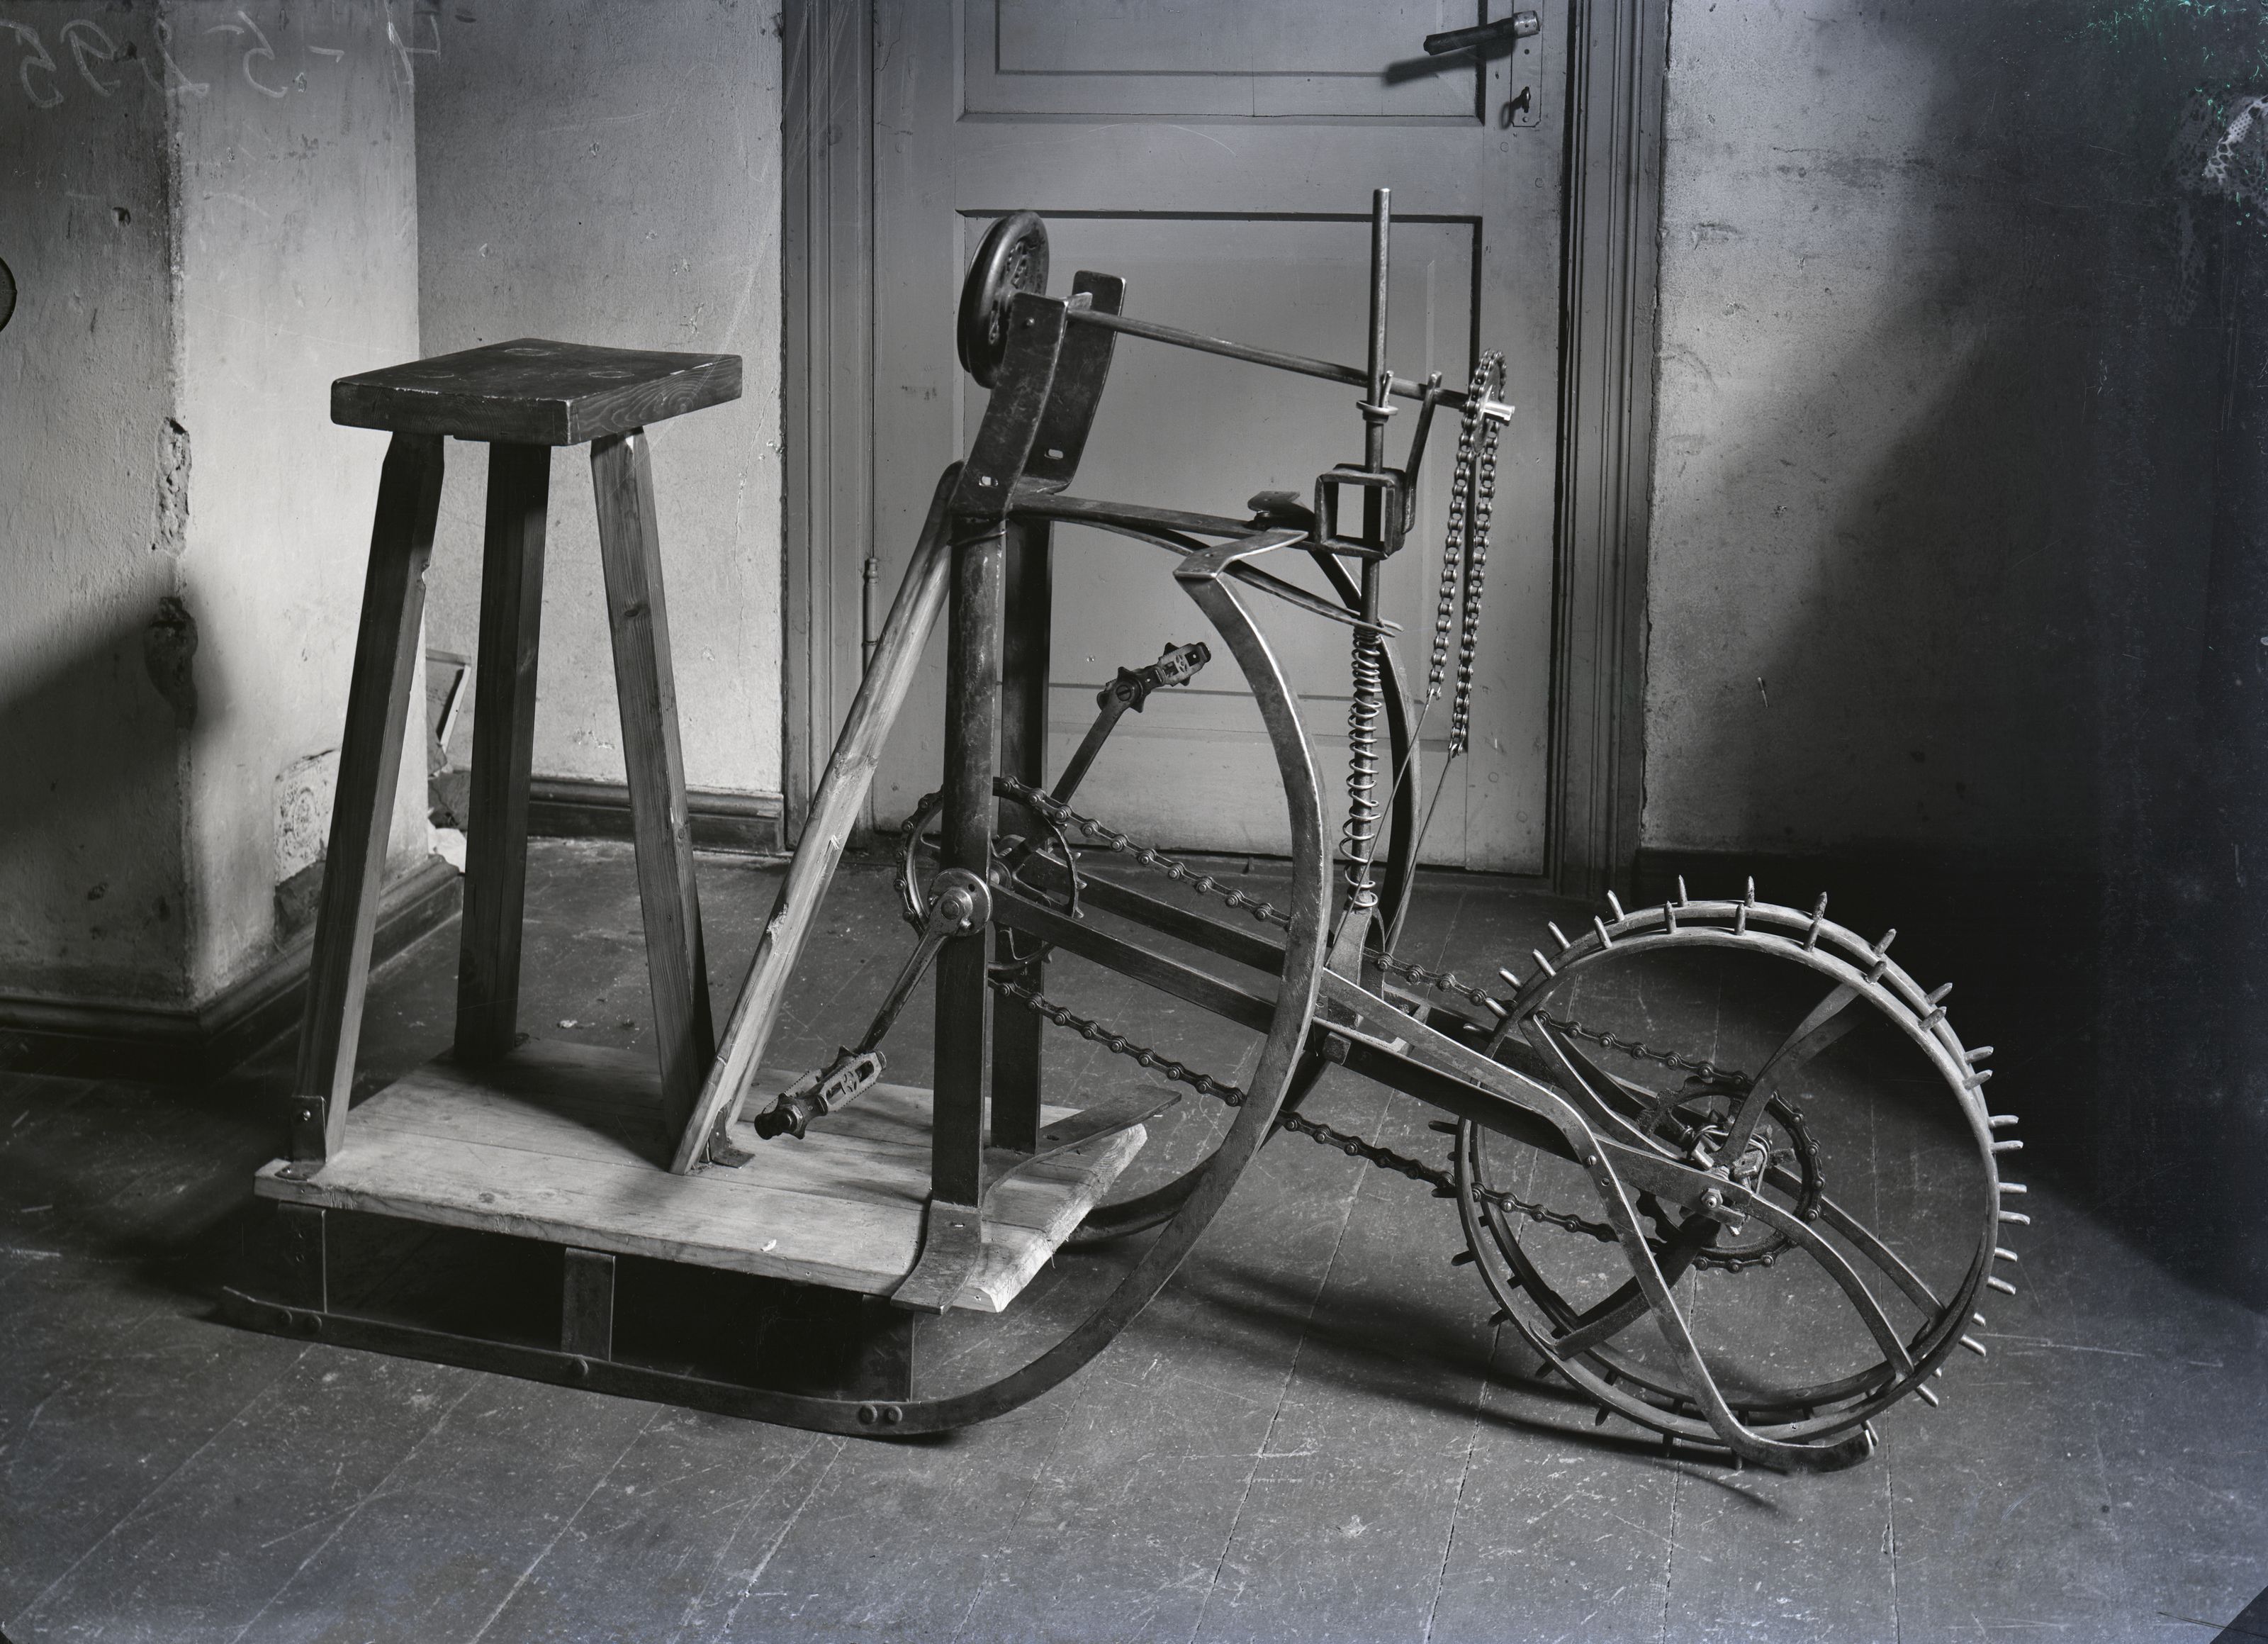 Jalgratas tehnilise innovatsiooni allikana. 